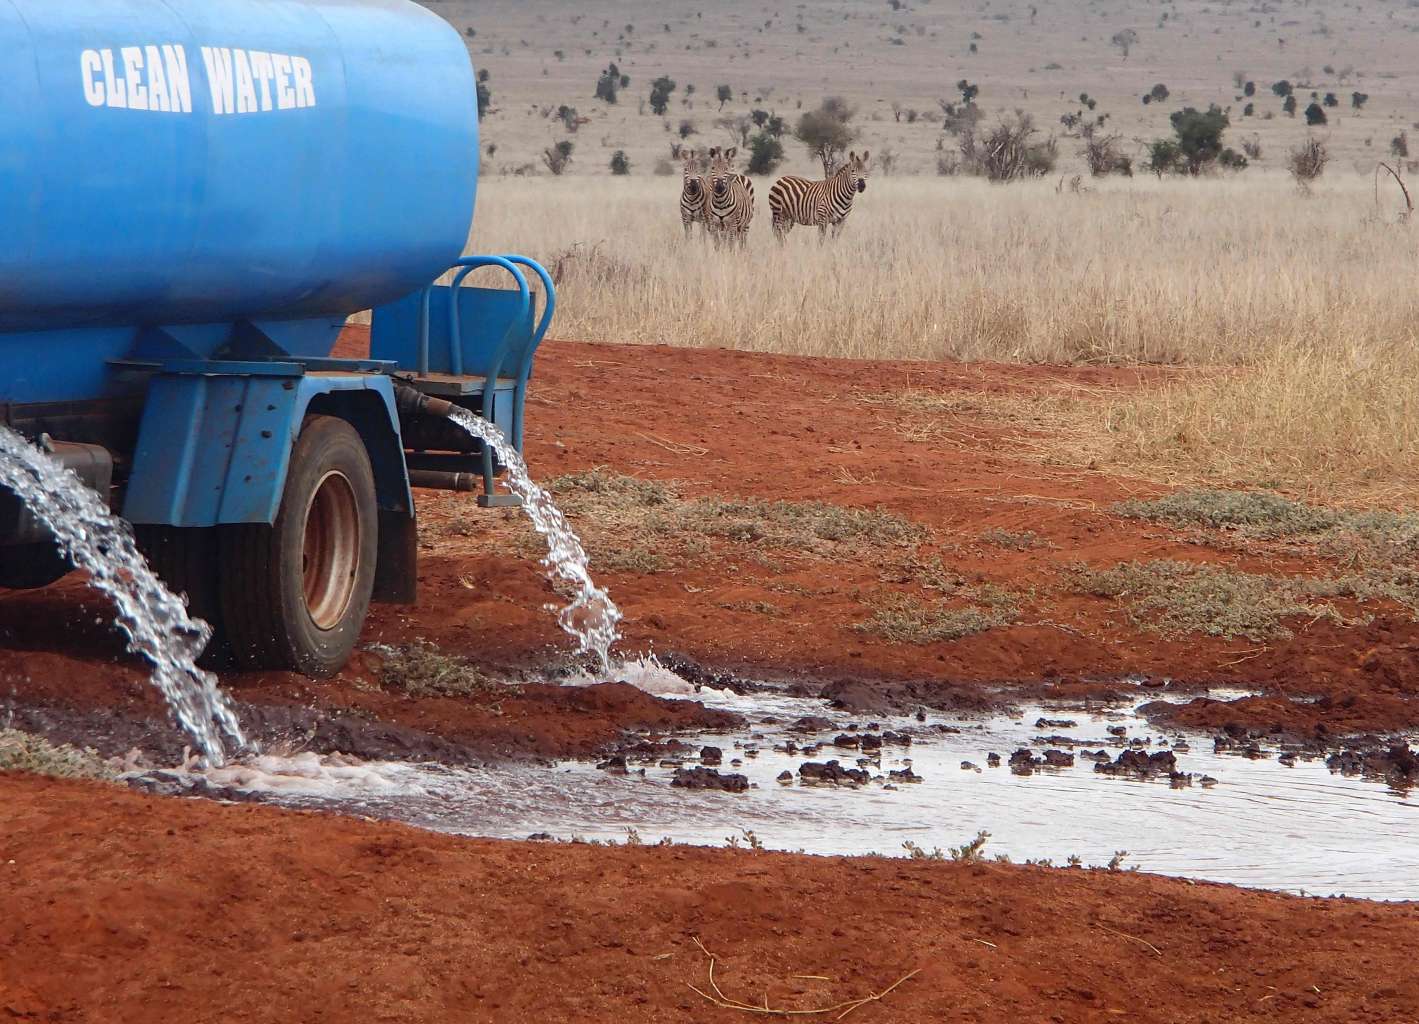  Unsung Heroes: Mwalua Patrick versorgt wilde Tiere mit Trinkwasser